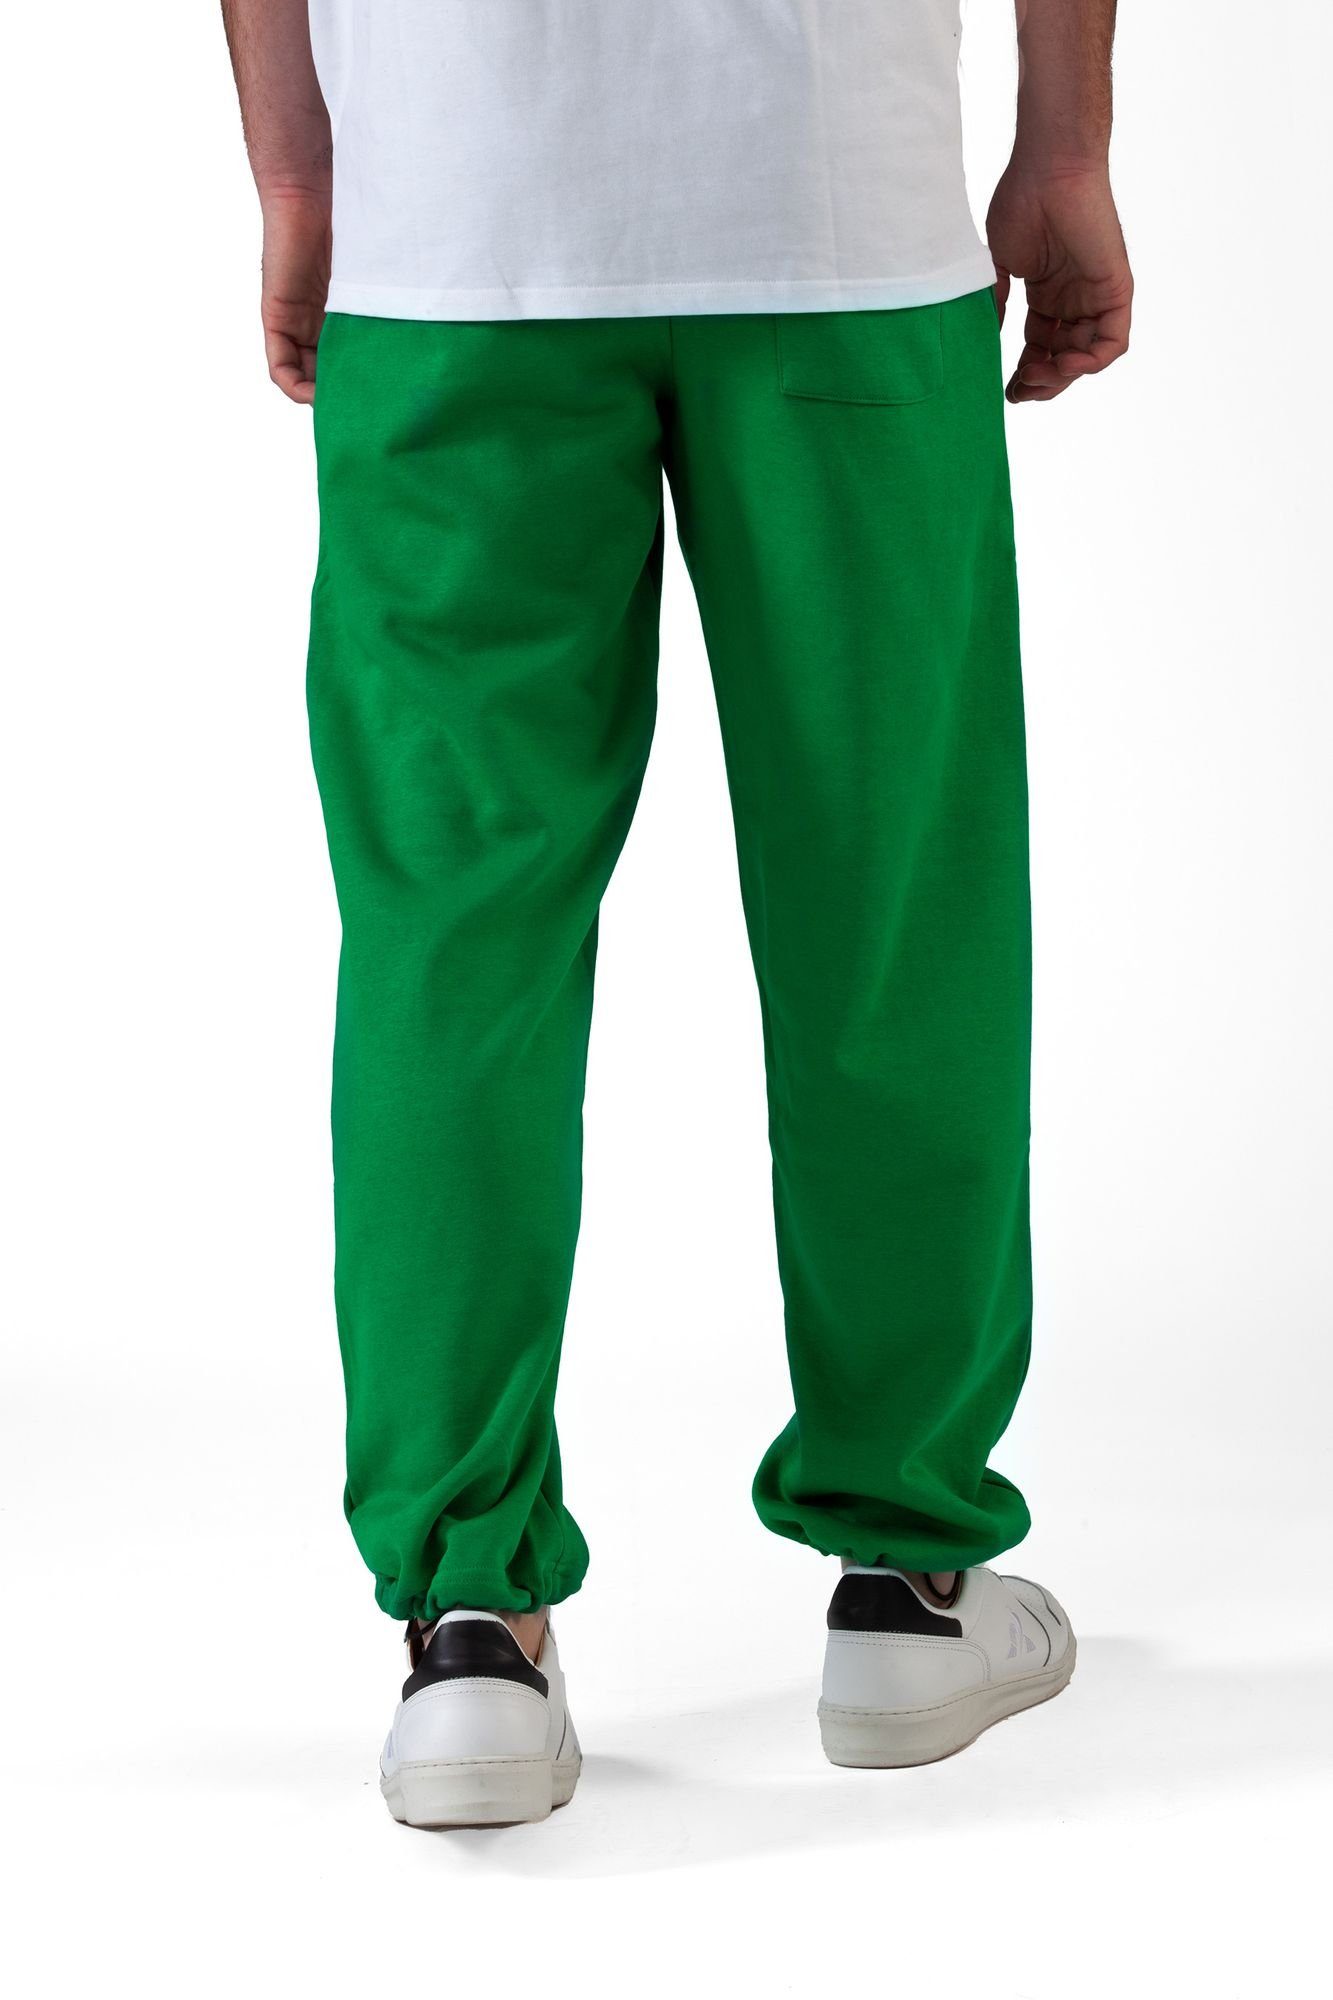 Pant Sweatpant Fitness Jogginghose Redrum Green (S-7XL) Freizeit Trainingshose Plant Sporthose -